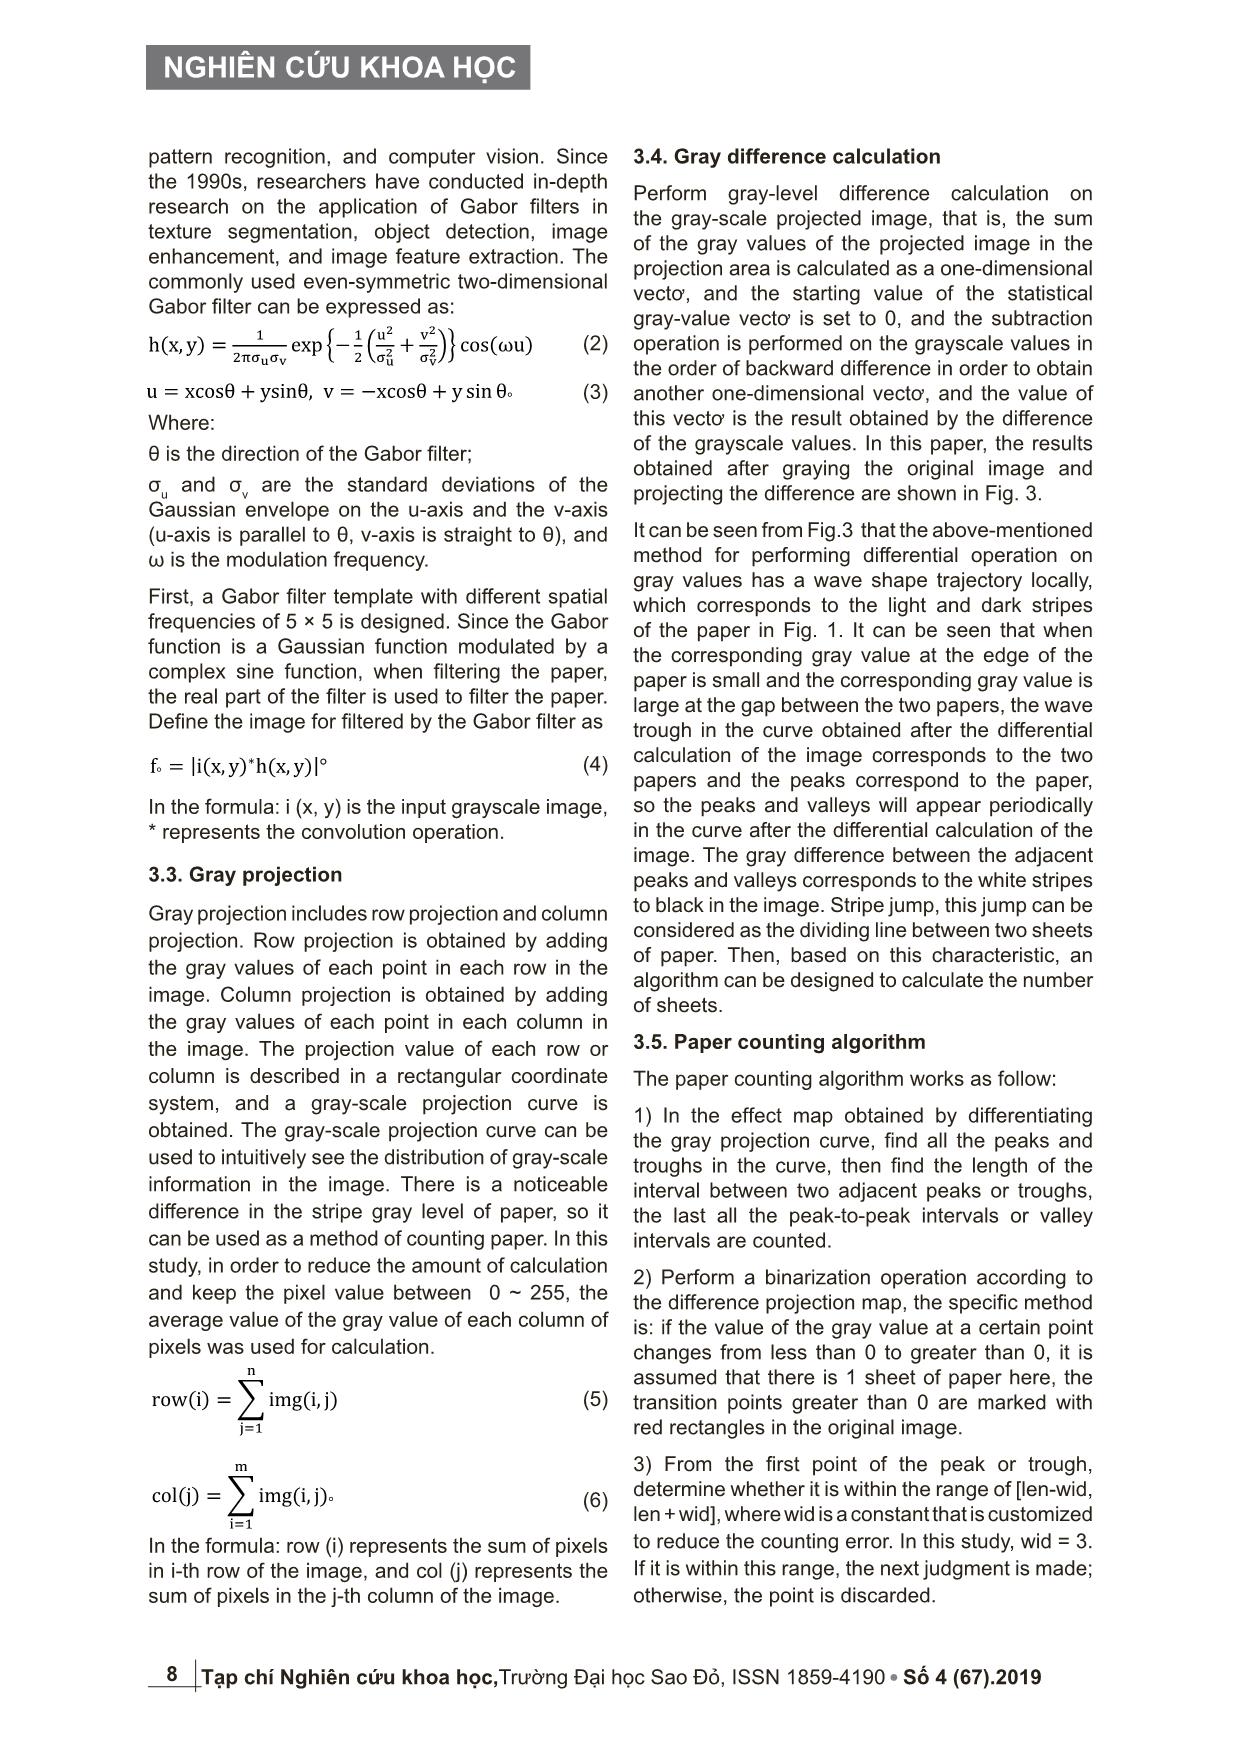 Phương pháp đếm giấy dựa vào giá trị chênh lệch mức xám trang 4